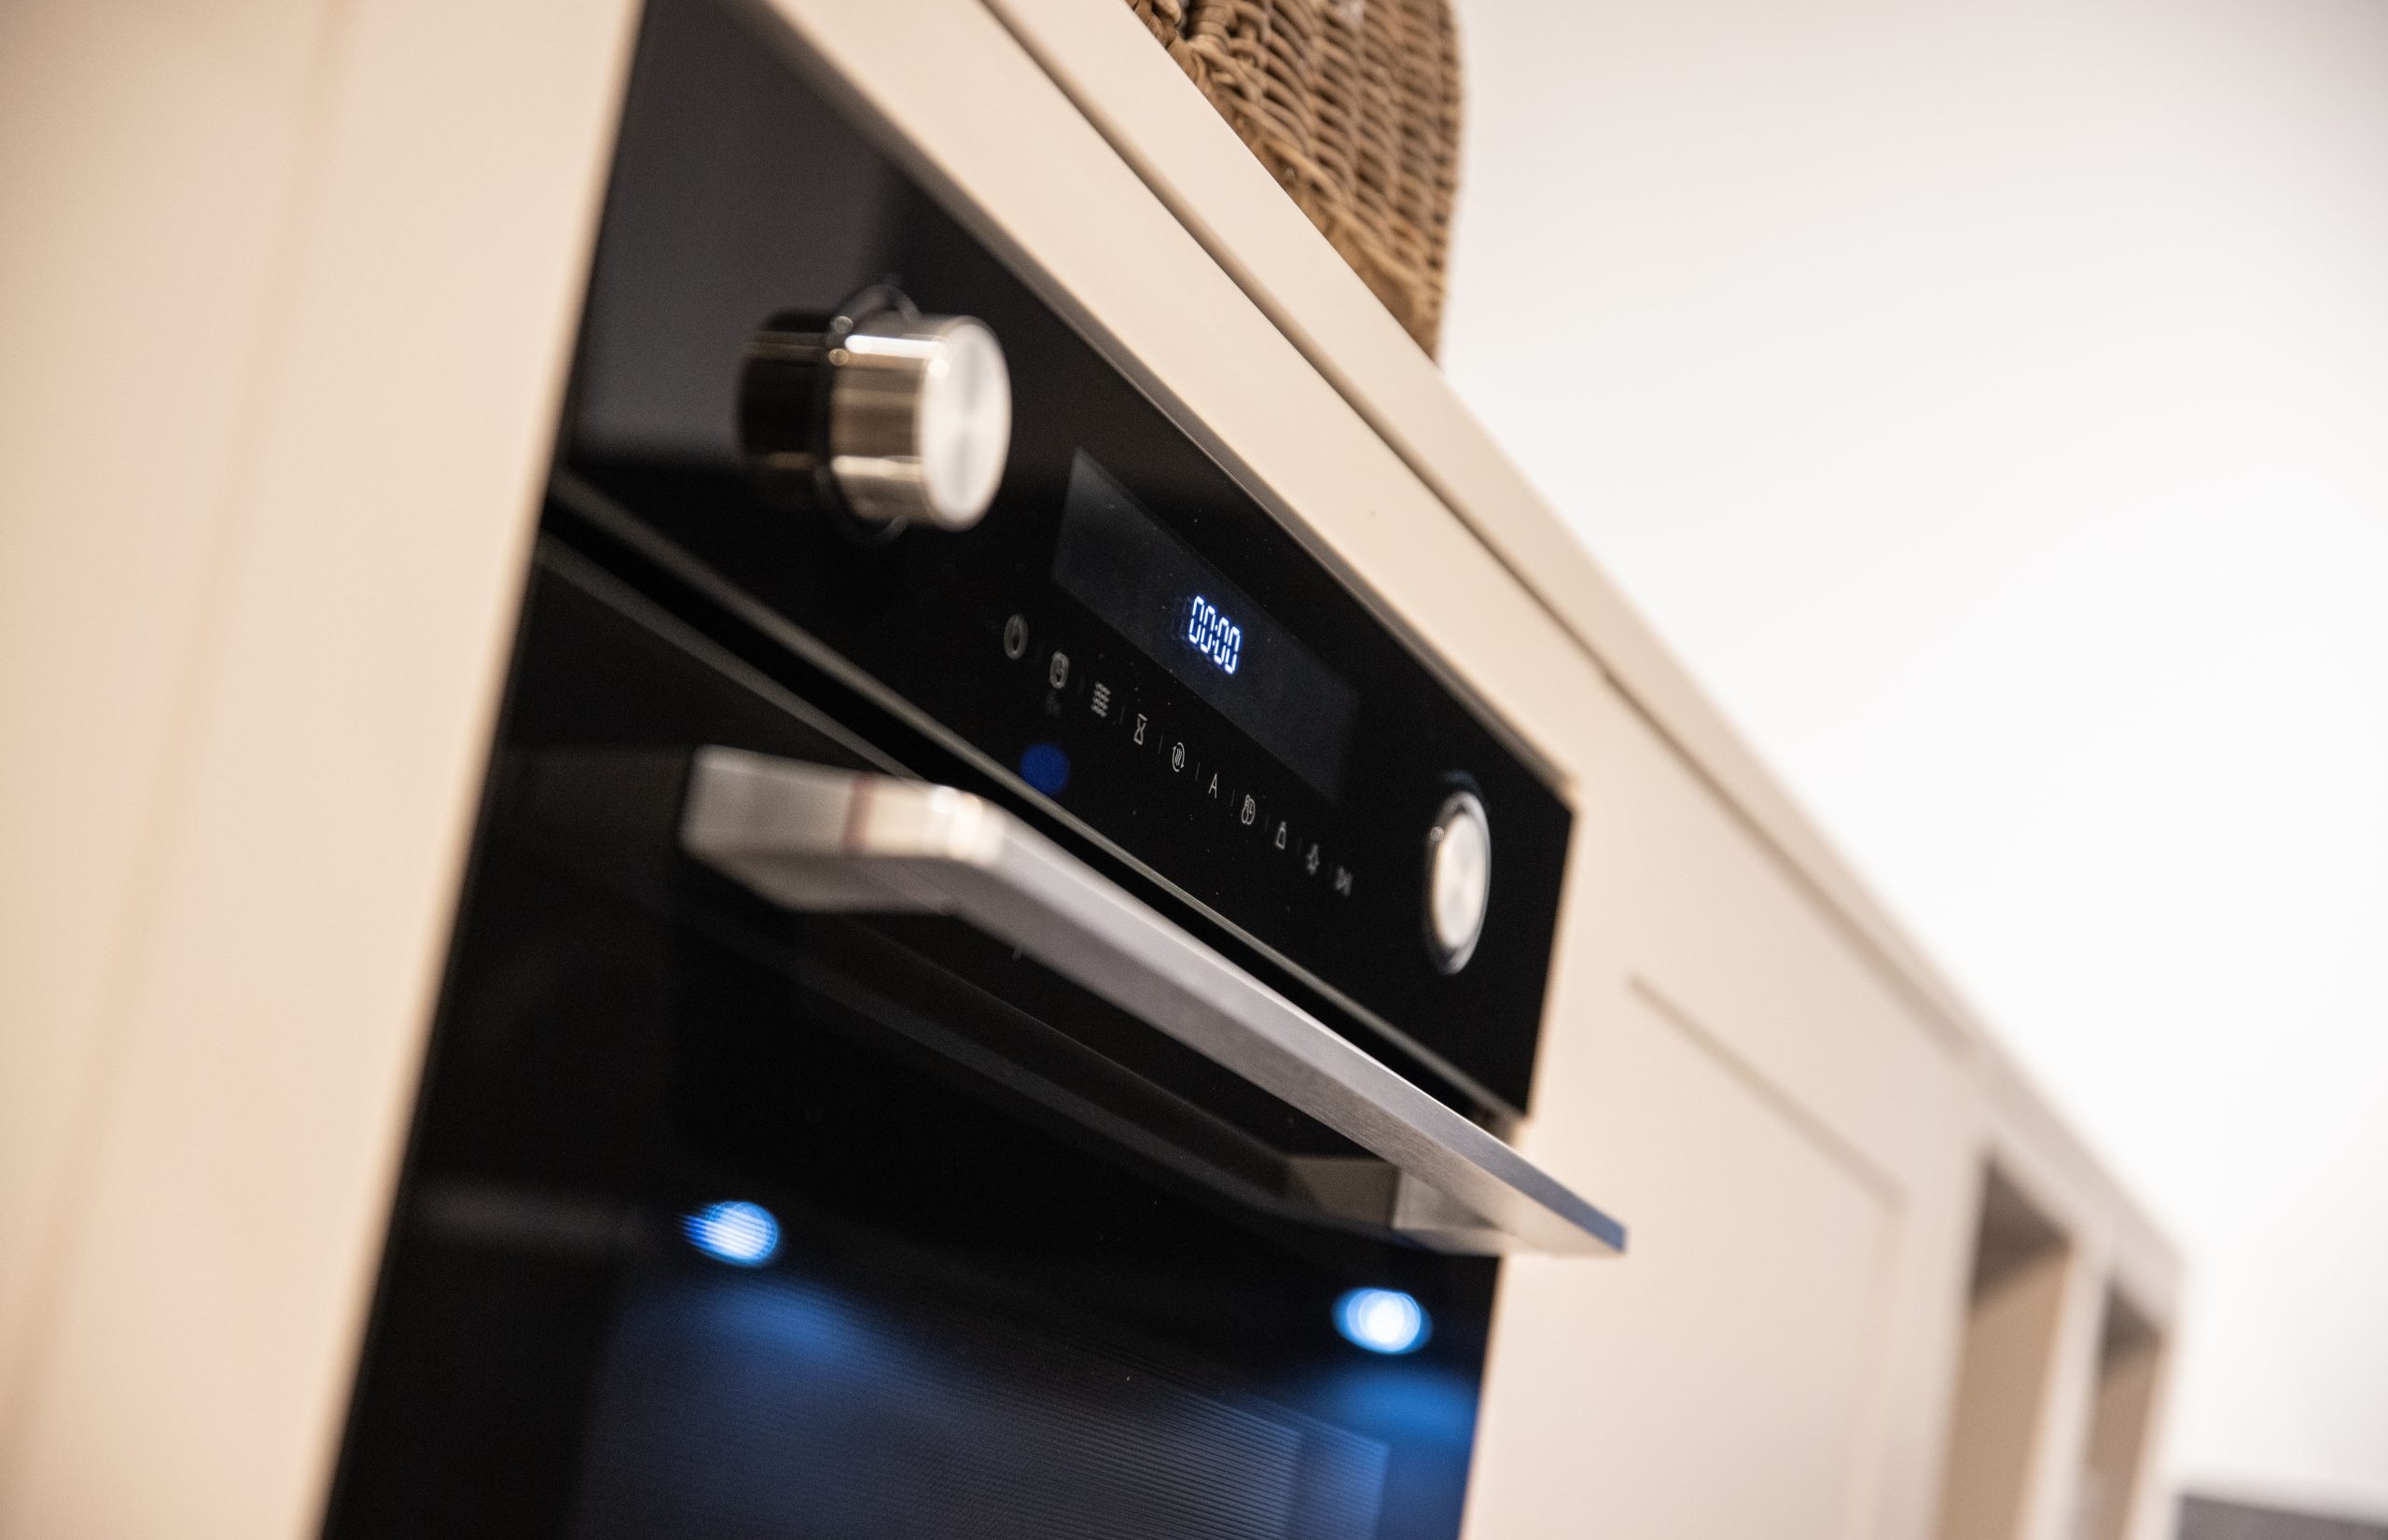 Deze inbouw oven beschikt over een zeer intuïtieve bediening - Bemmel & Kroon keukens